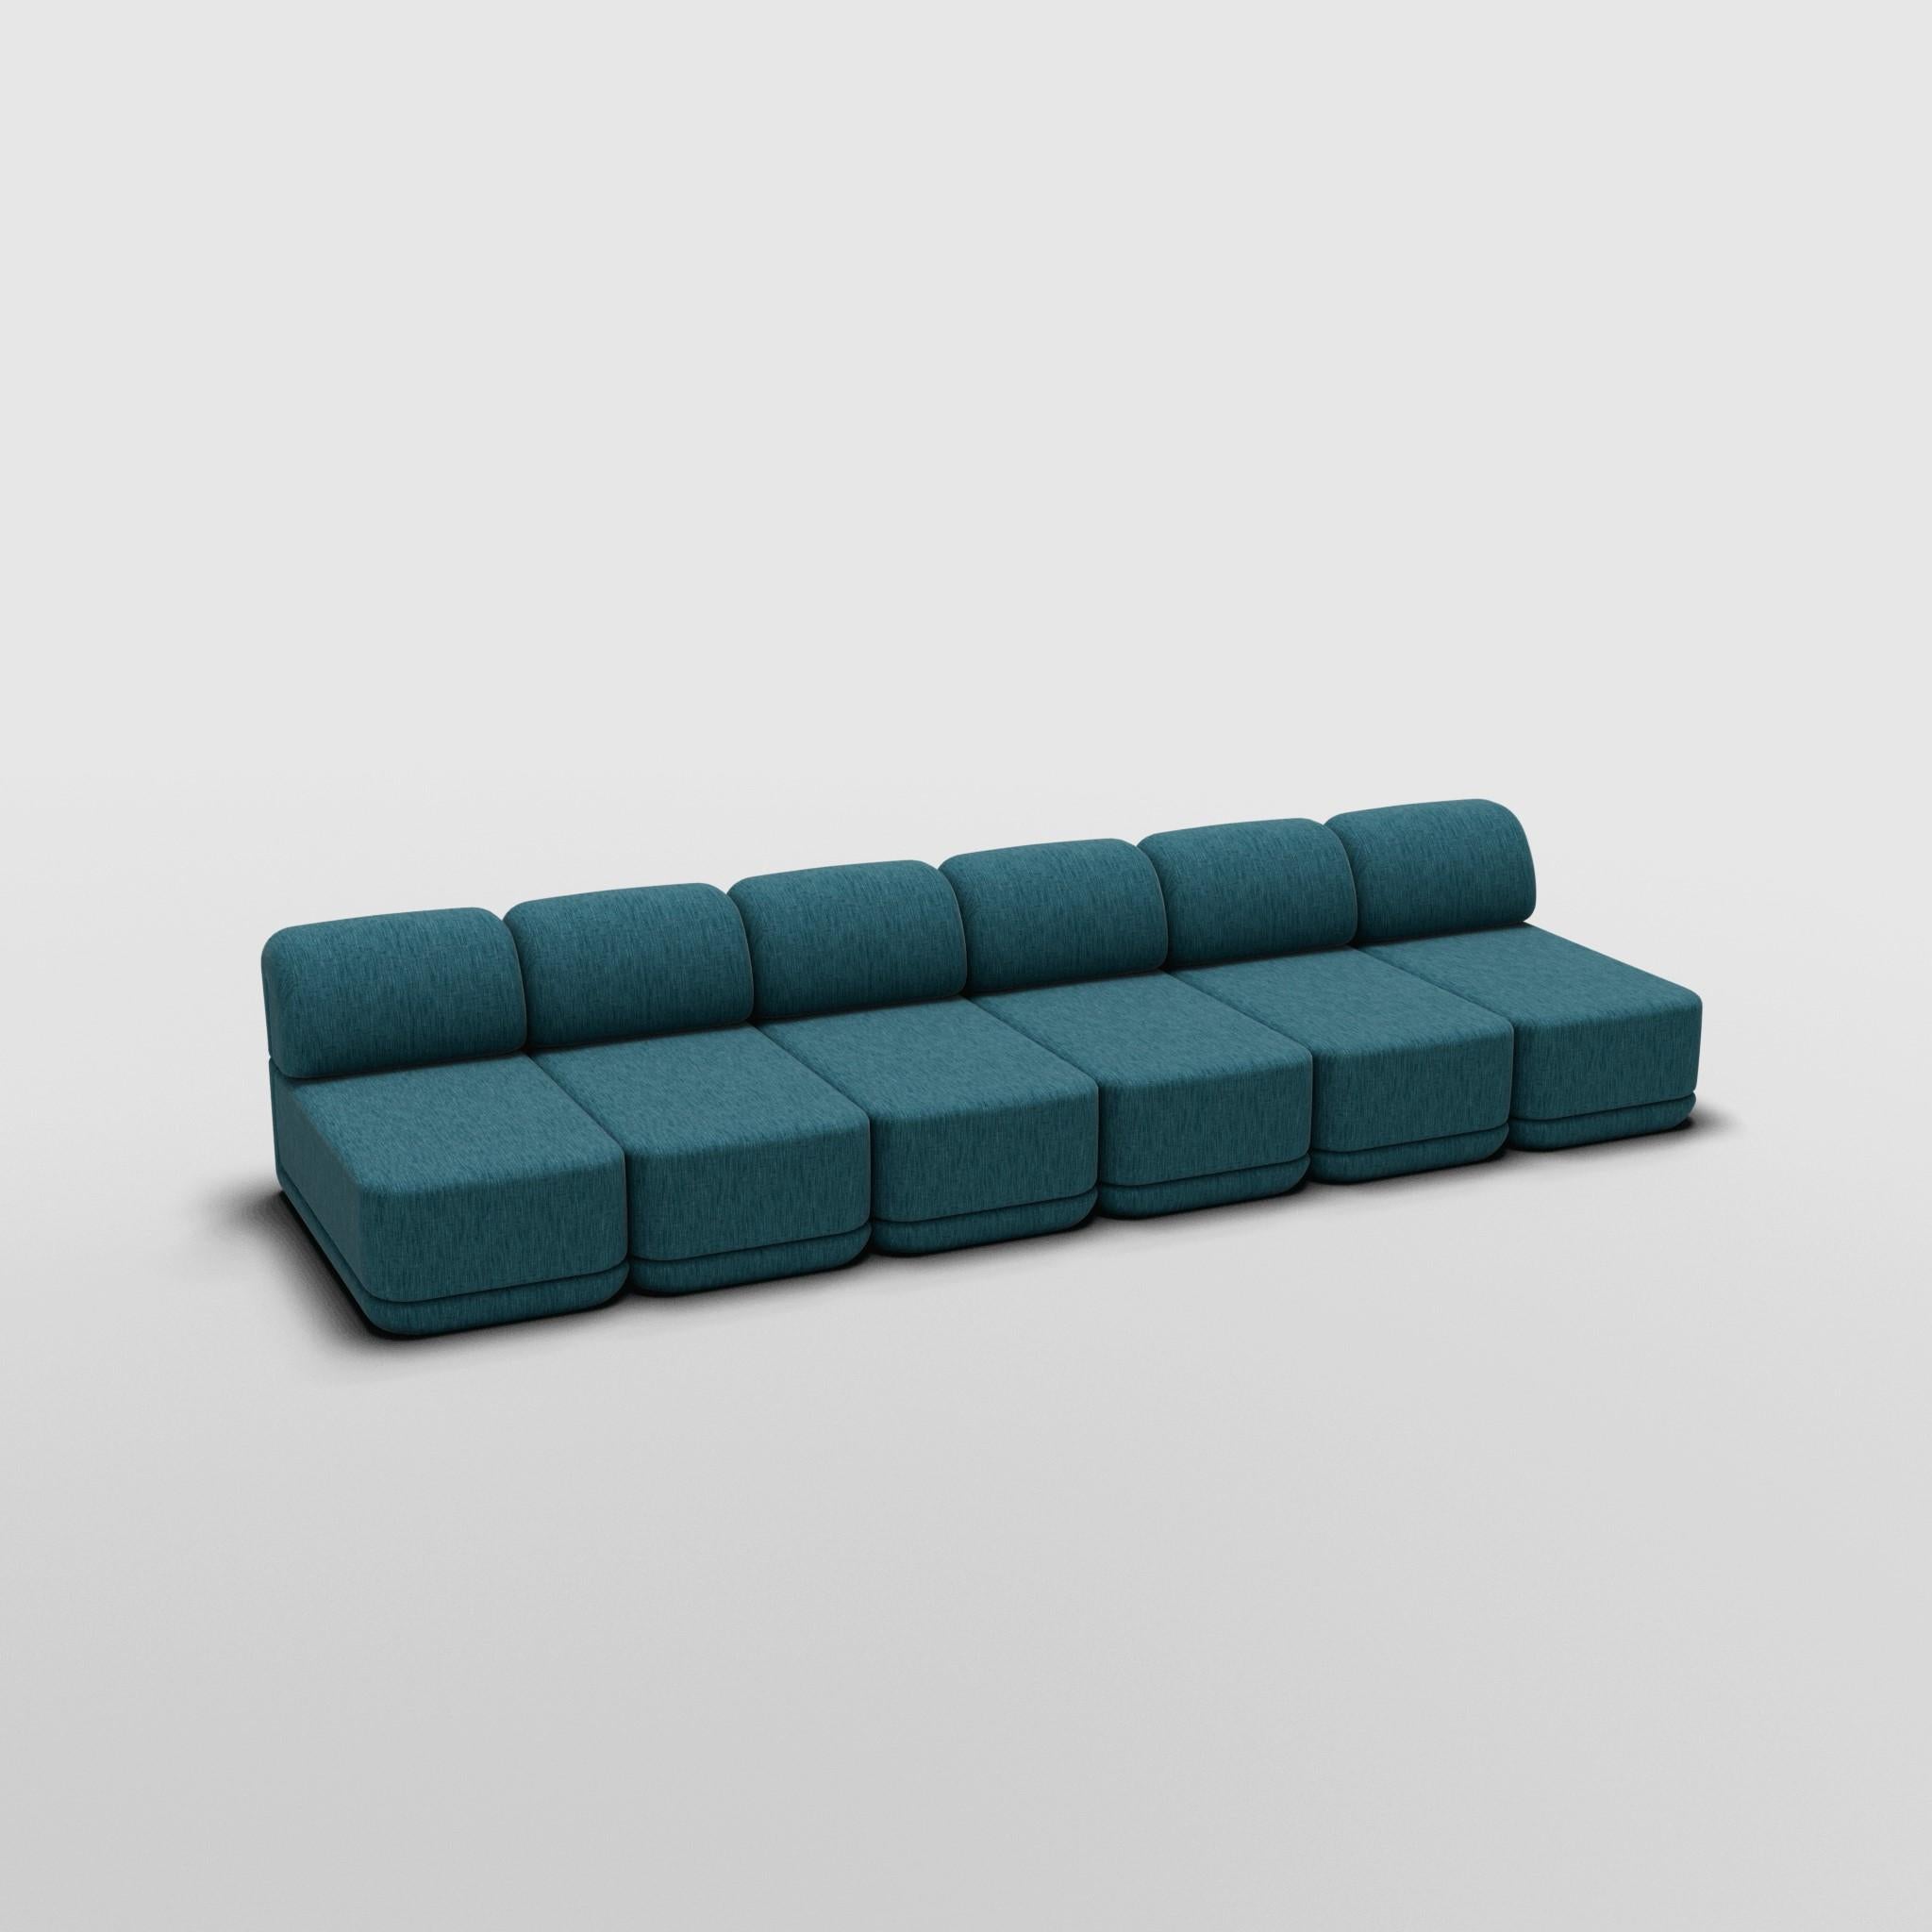 Slim Caterpillar - Inspiré par le mobilier de luxe italien des années 70

Découvrez le canapé Cube, où l'art rencontre l'adaptabilité. Son design sculptural et son confort personnalisable créent des possibilités infinies pour votre espace de vie.